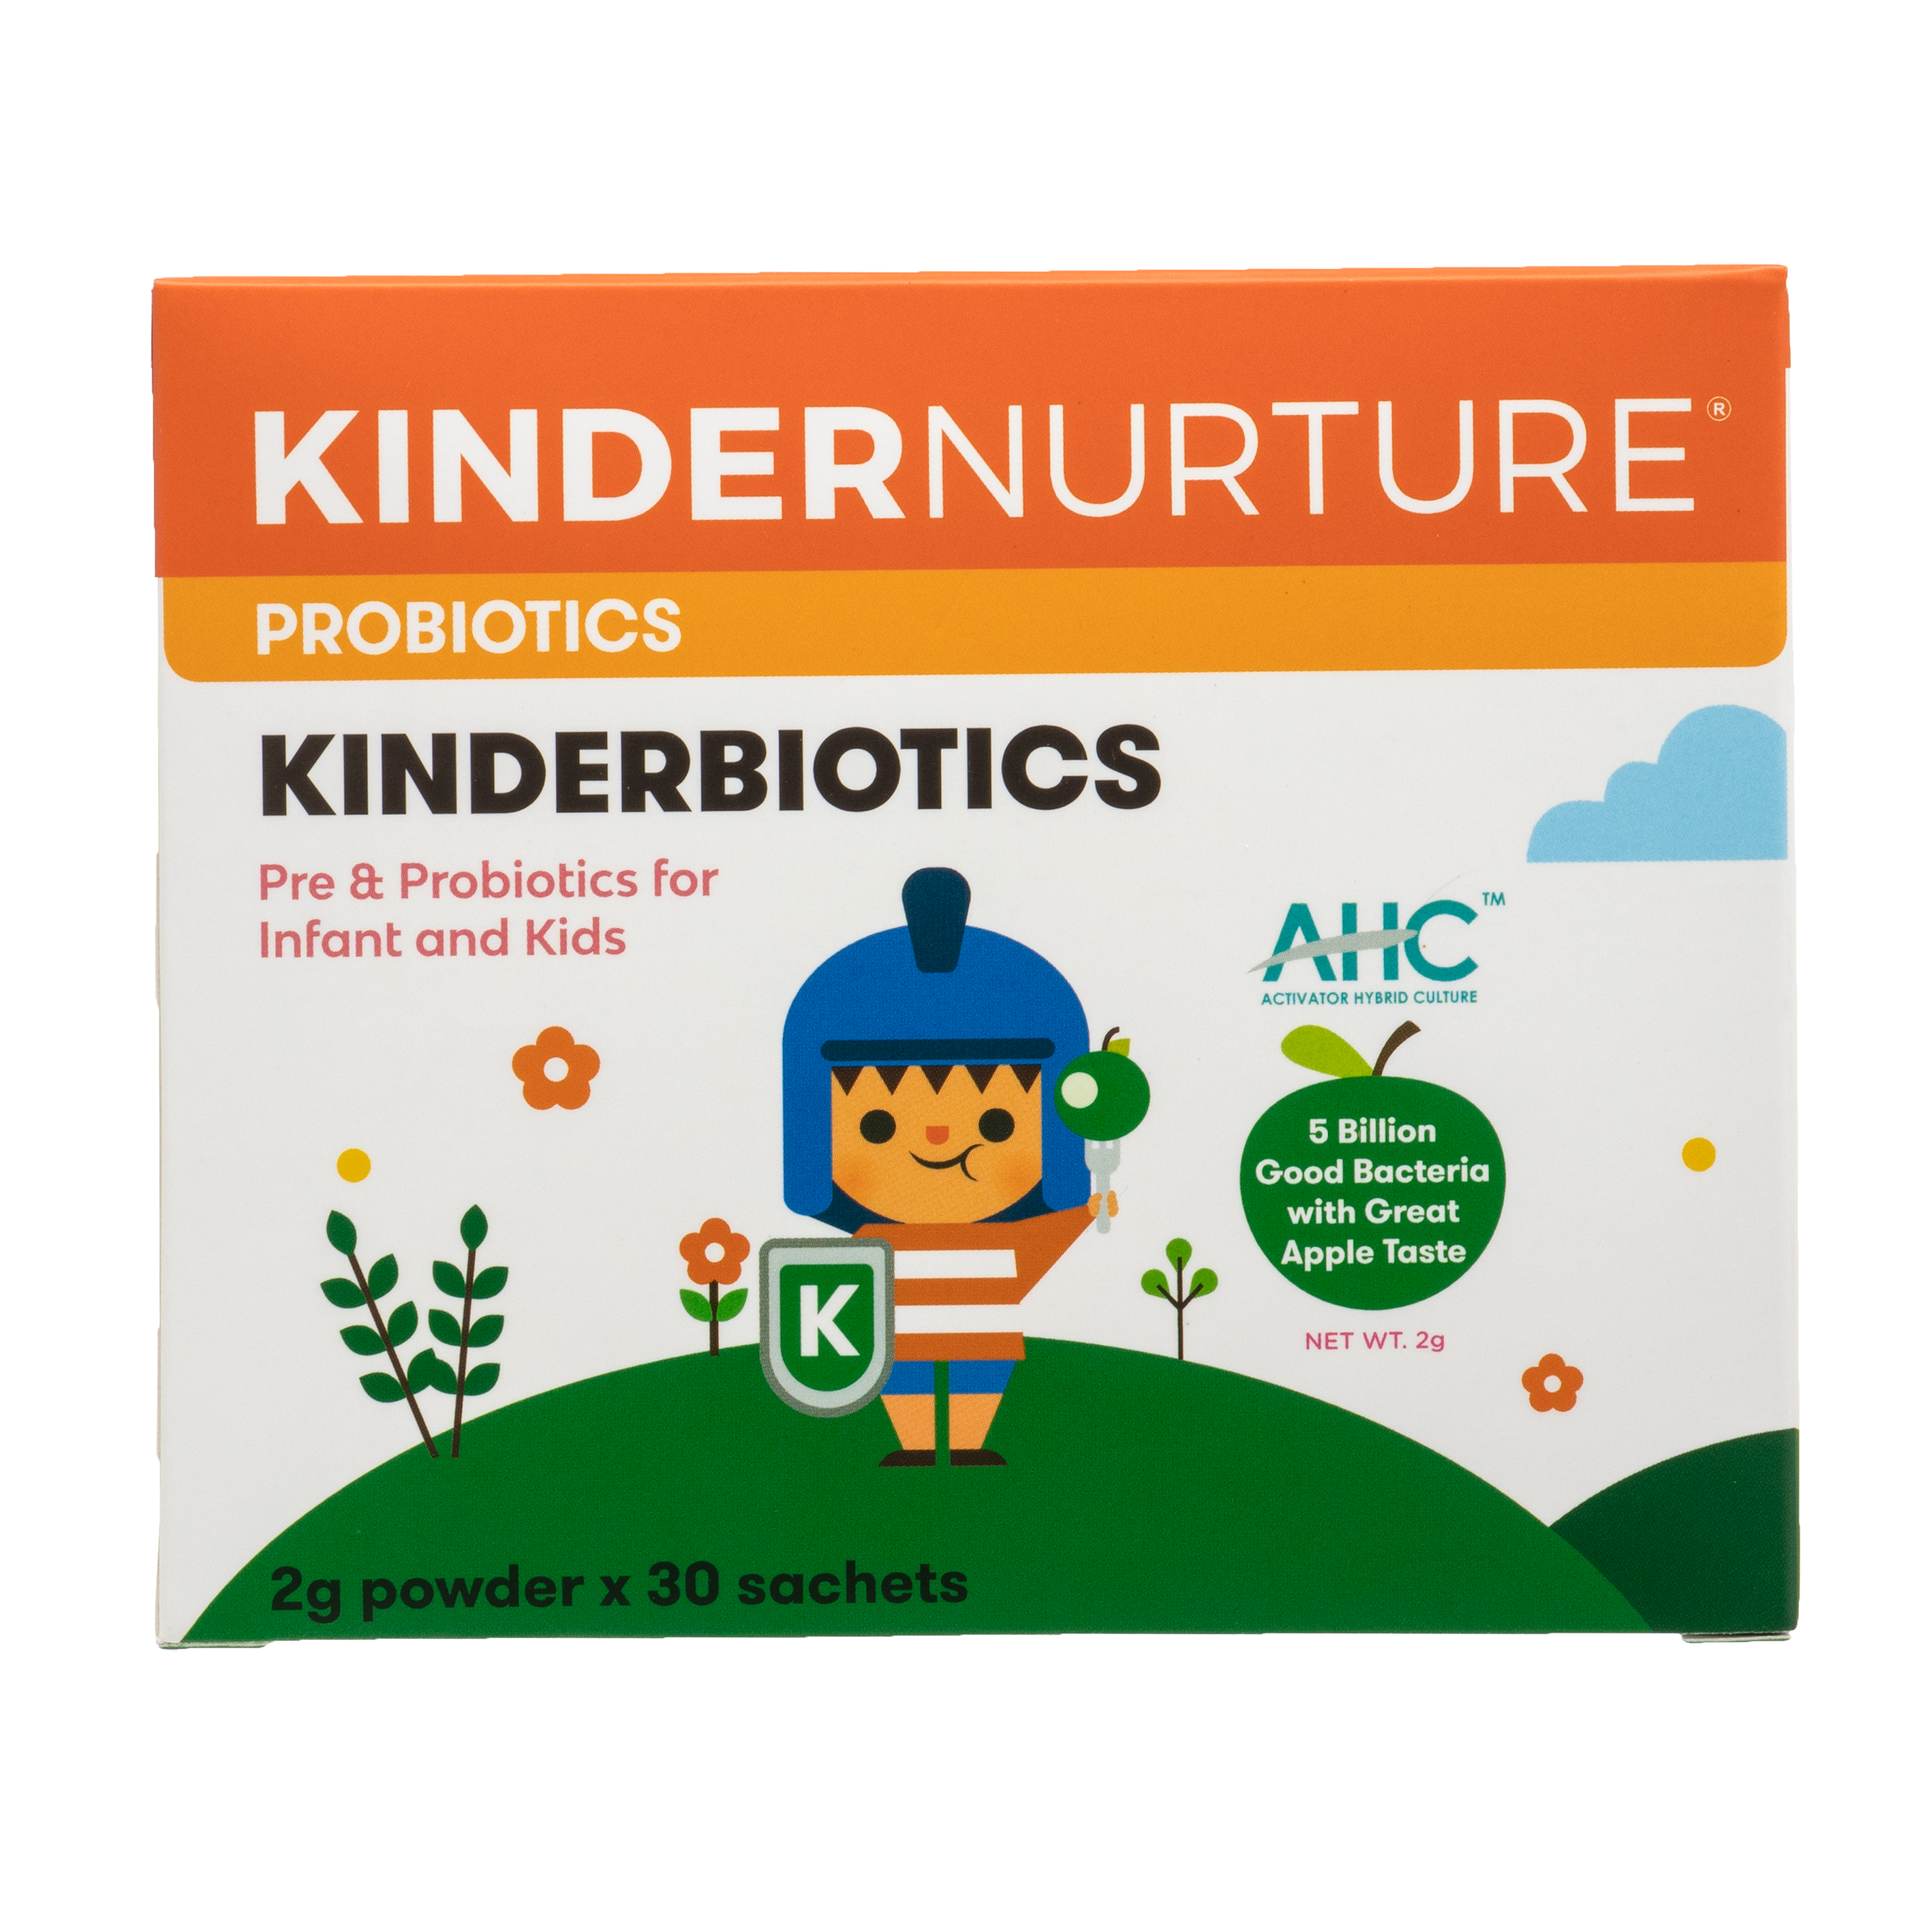 [25% Off Bundle Deal] 3 x KinderNurture Kinderbiotics Probiotics, 30 sachets x 2g.